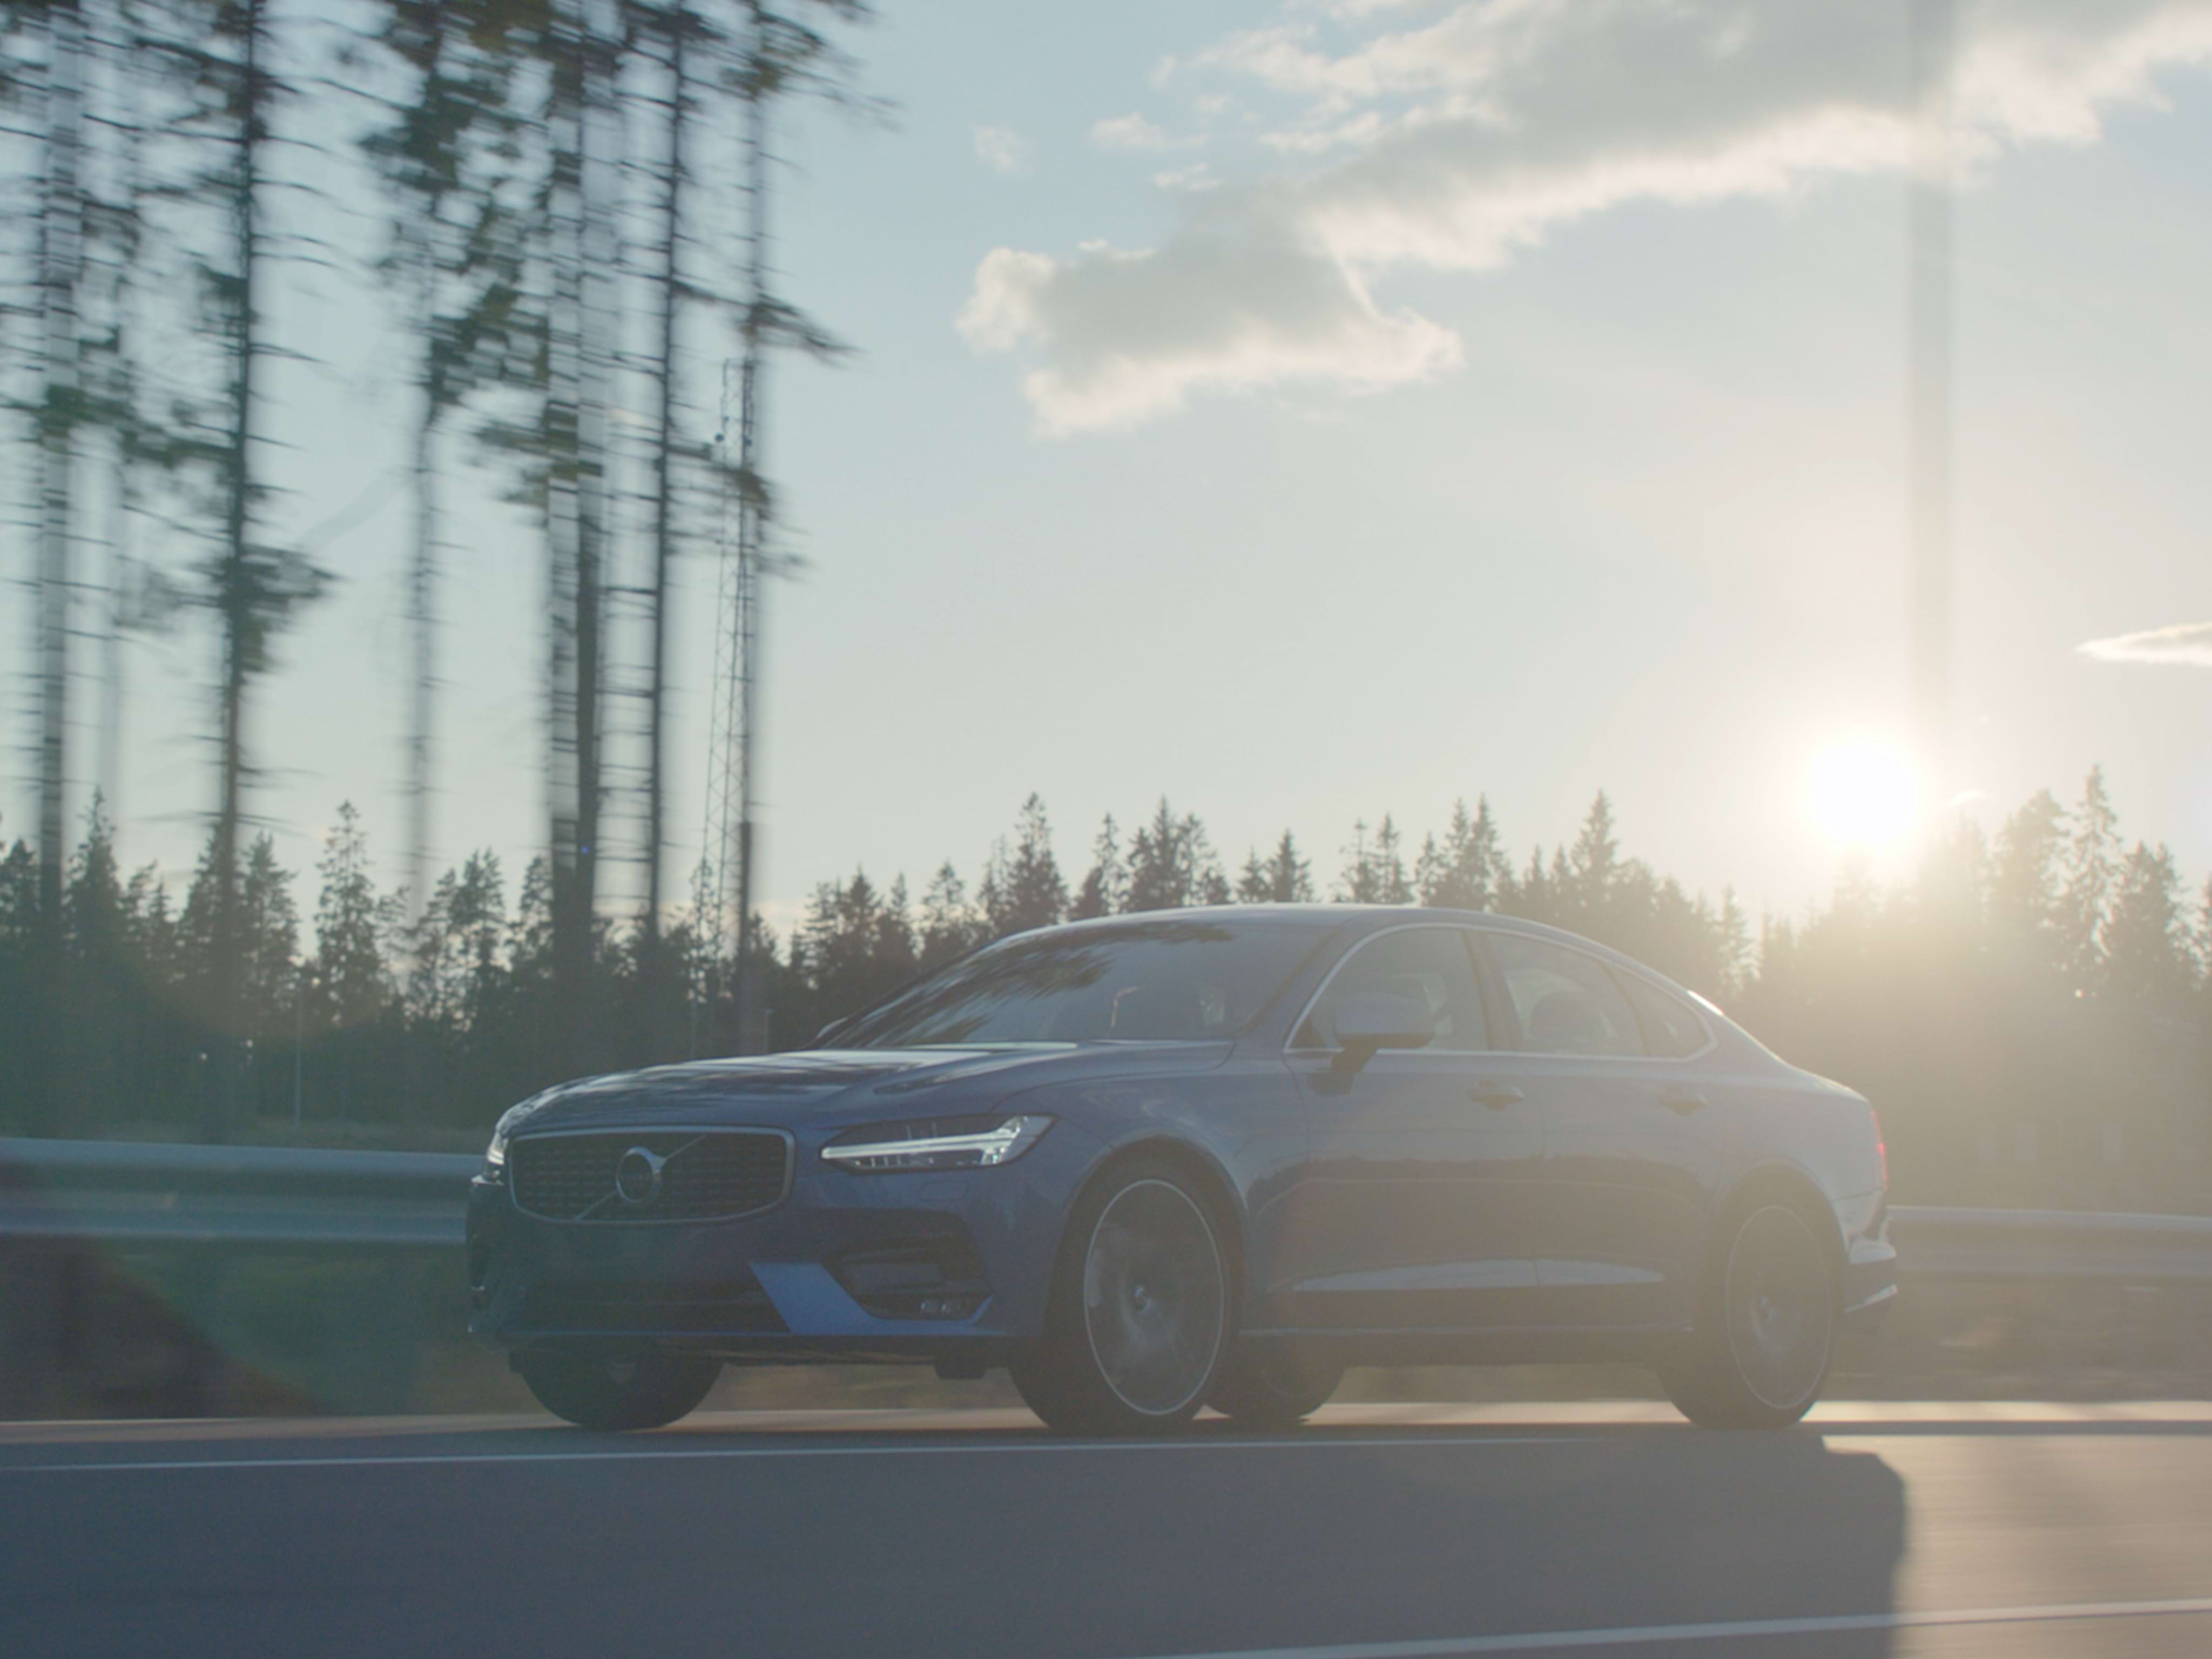 Szerokie ujęcie sedana Volvo S90 w kolorze Denim Blue jadącego w słoneczny dzień przecinającą las drogą